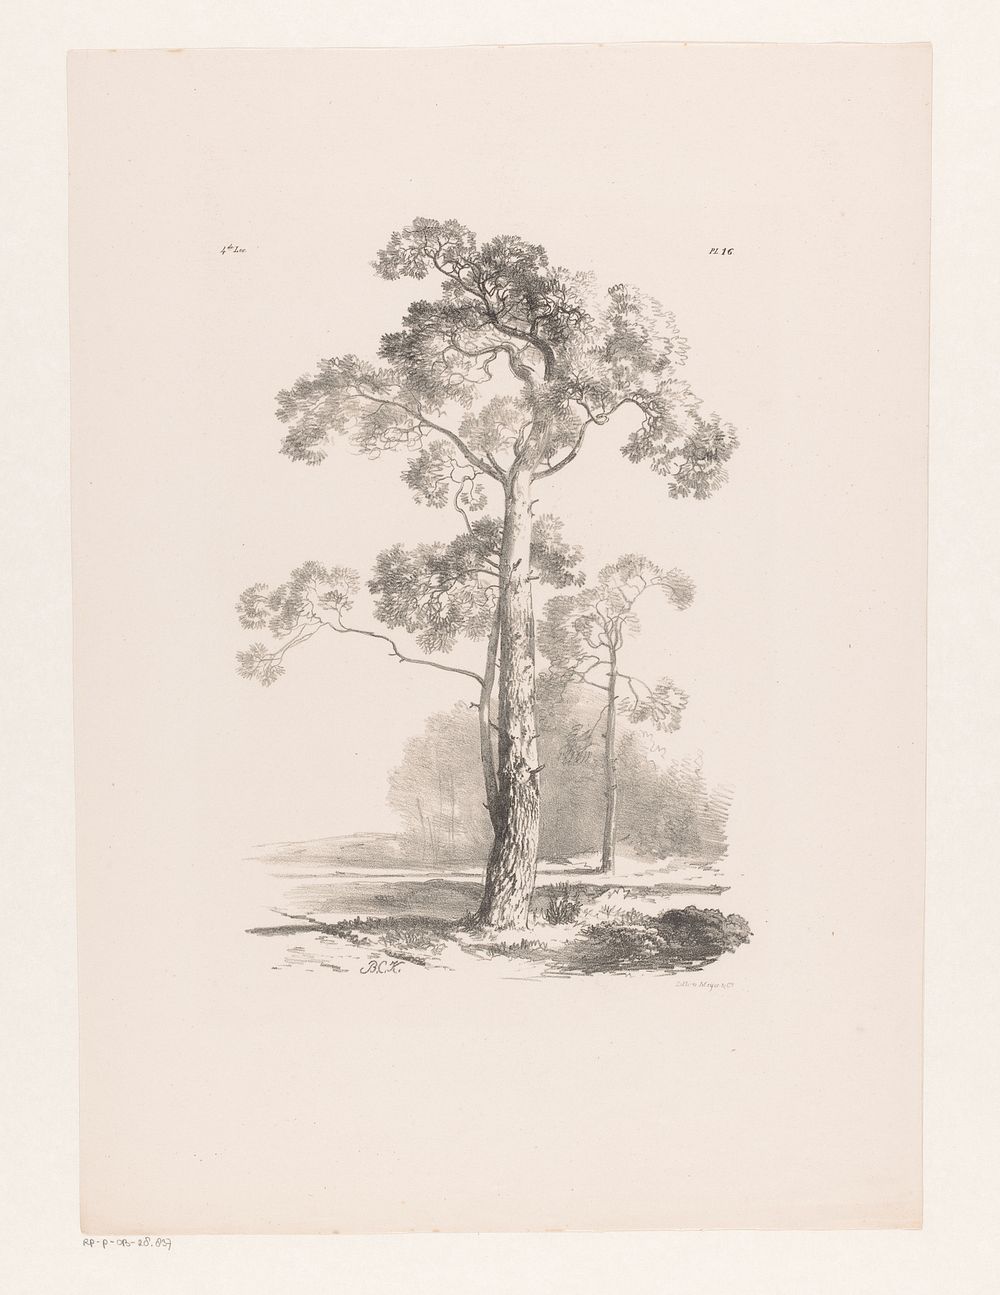 Boom in landschap (1844 - 1845) by Barend Cornelis Koekkoek and Meyer and Comp